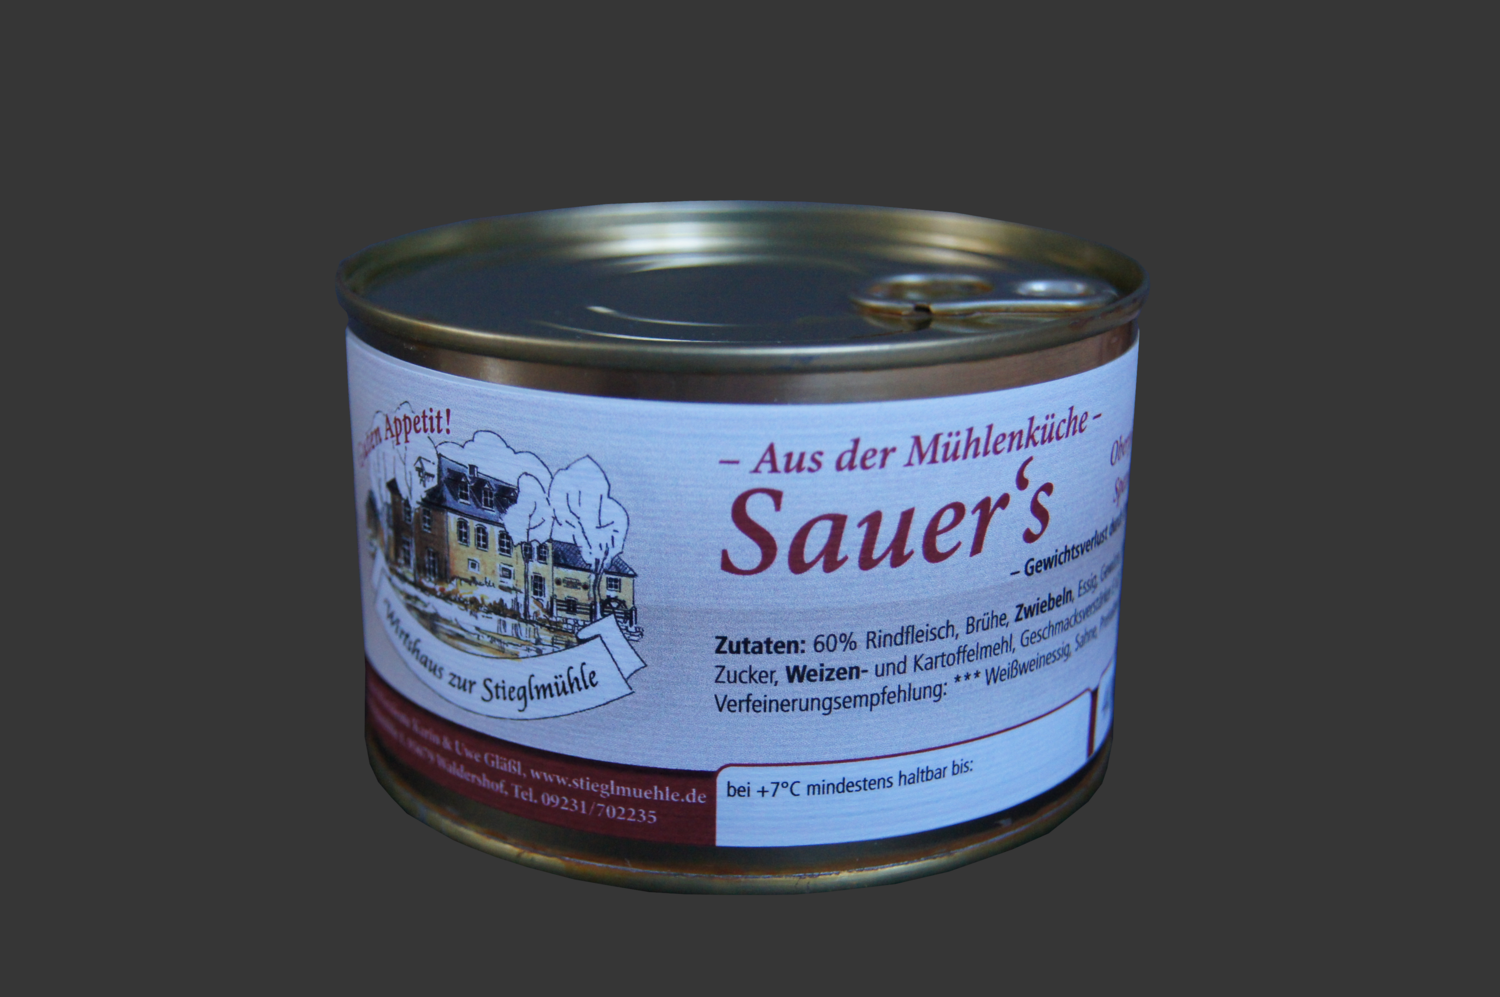 Sauer's